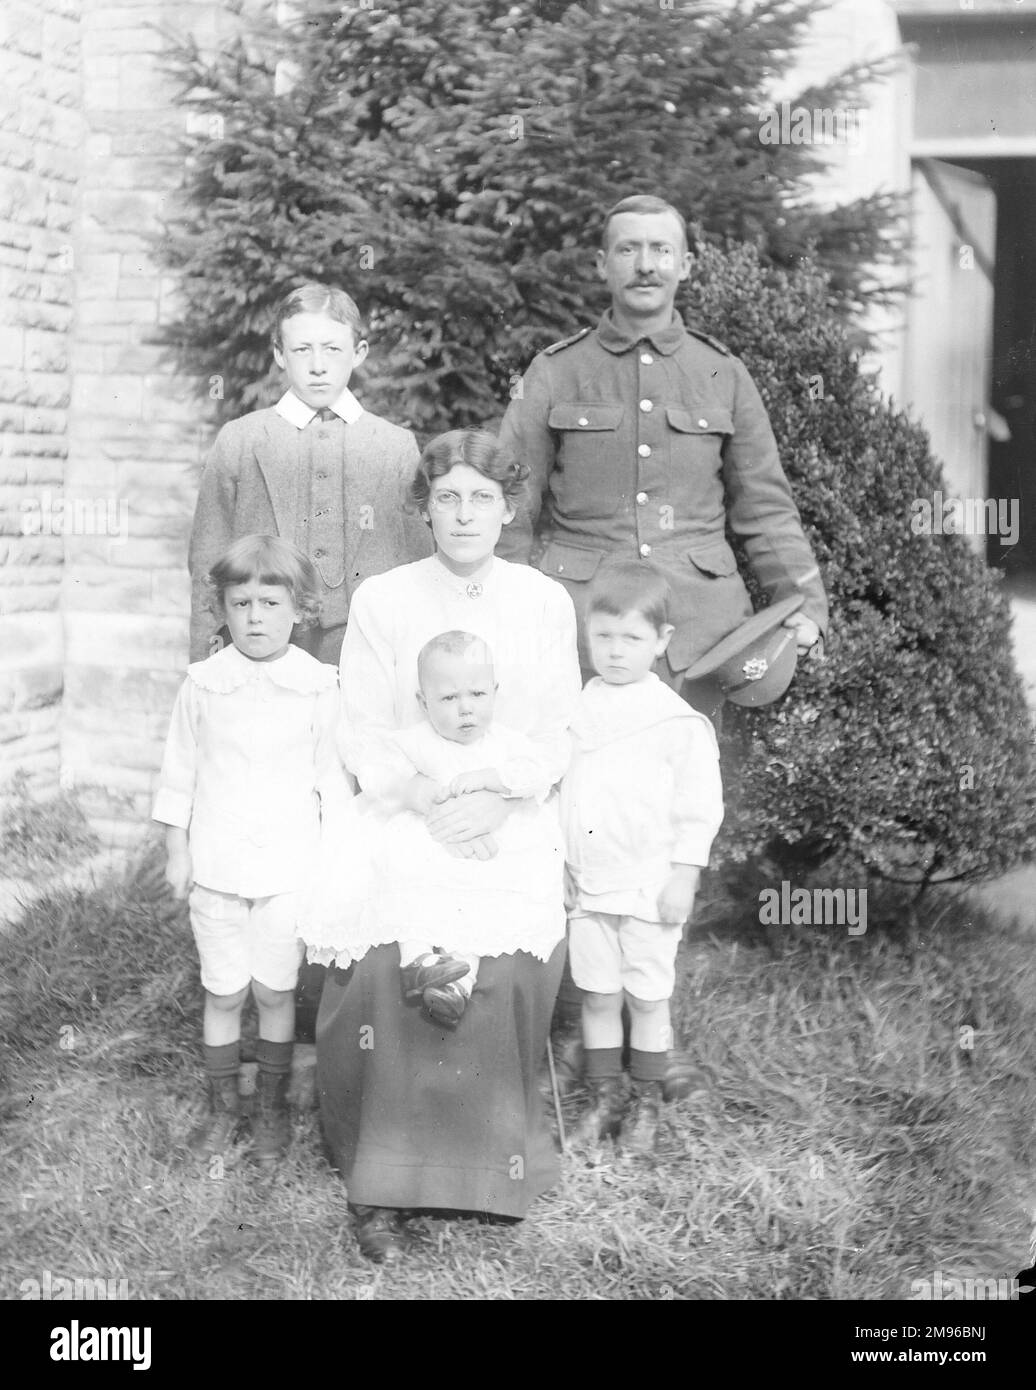 Une photo de groupe familial dans un jardin, avec un père en uniforme, autour du déclenchement de la première Guerre mondiale. Banque D'Images